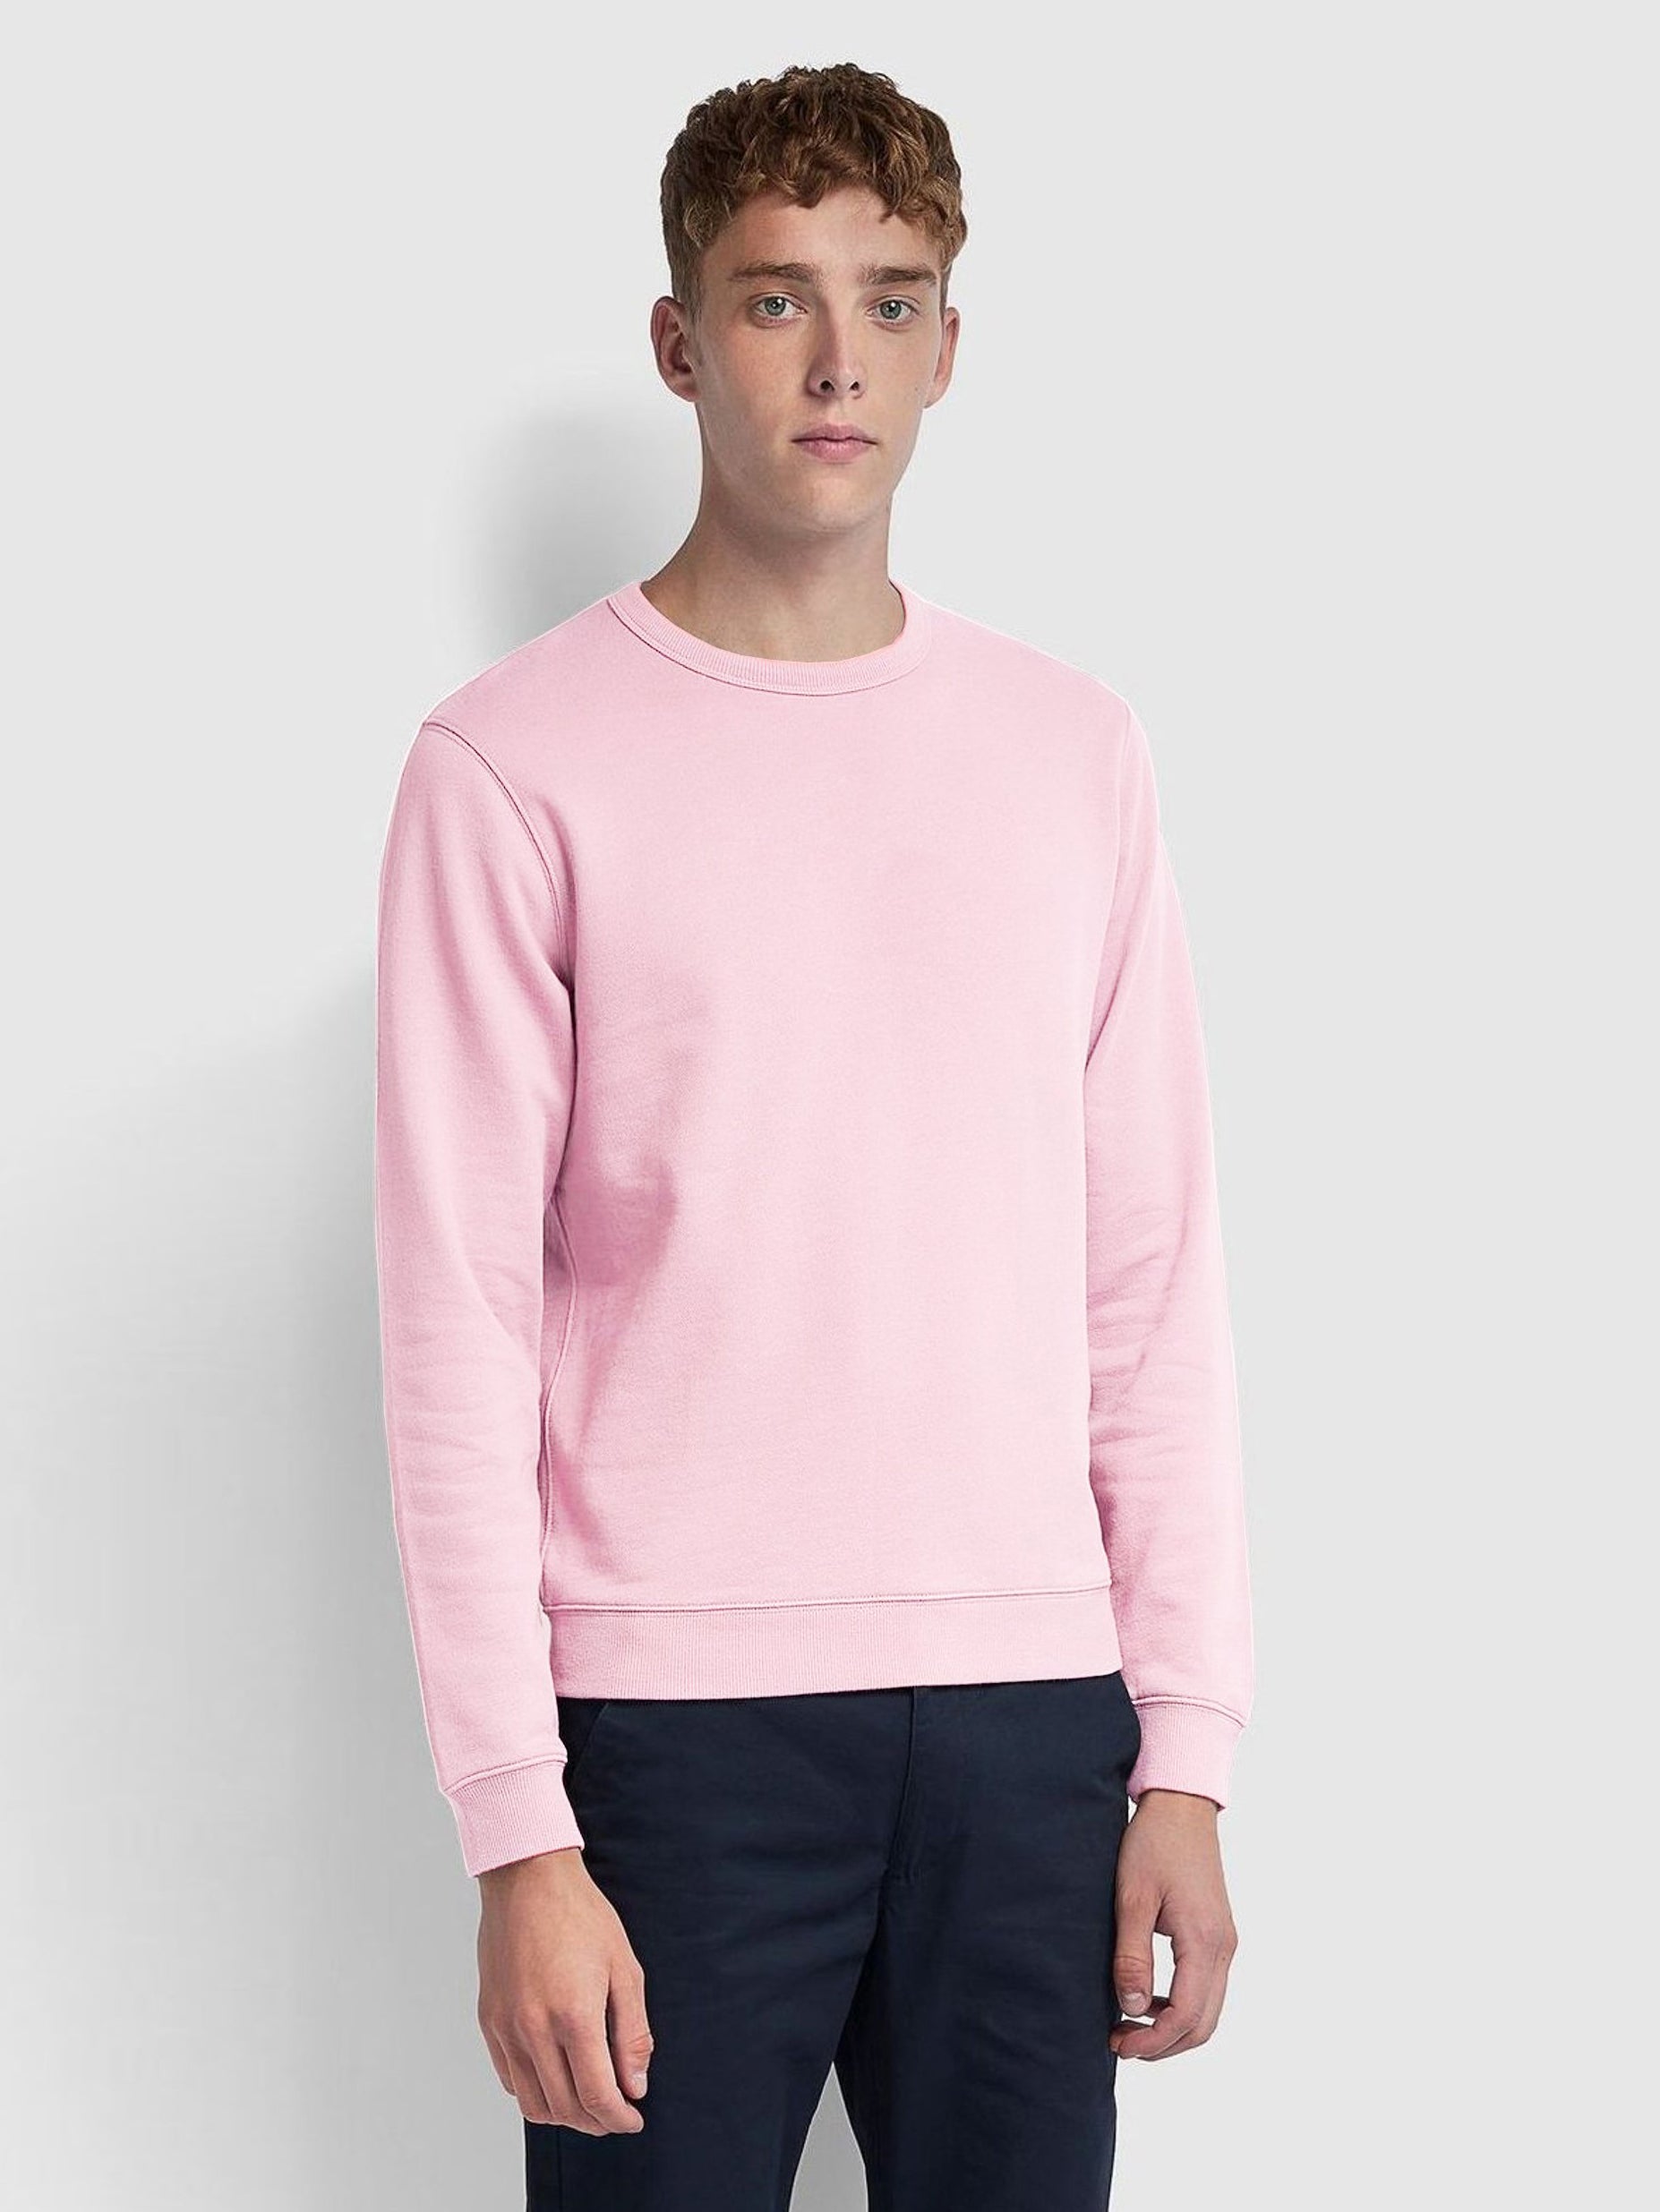 Premium Crew Neck Fleece Sweatshirt For Men-Pink-RT1386